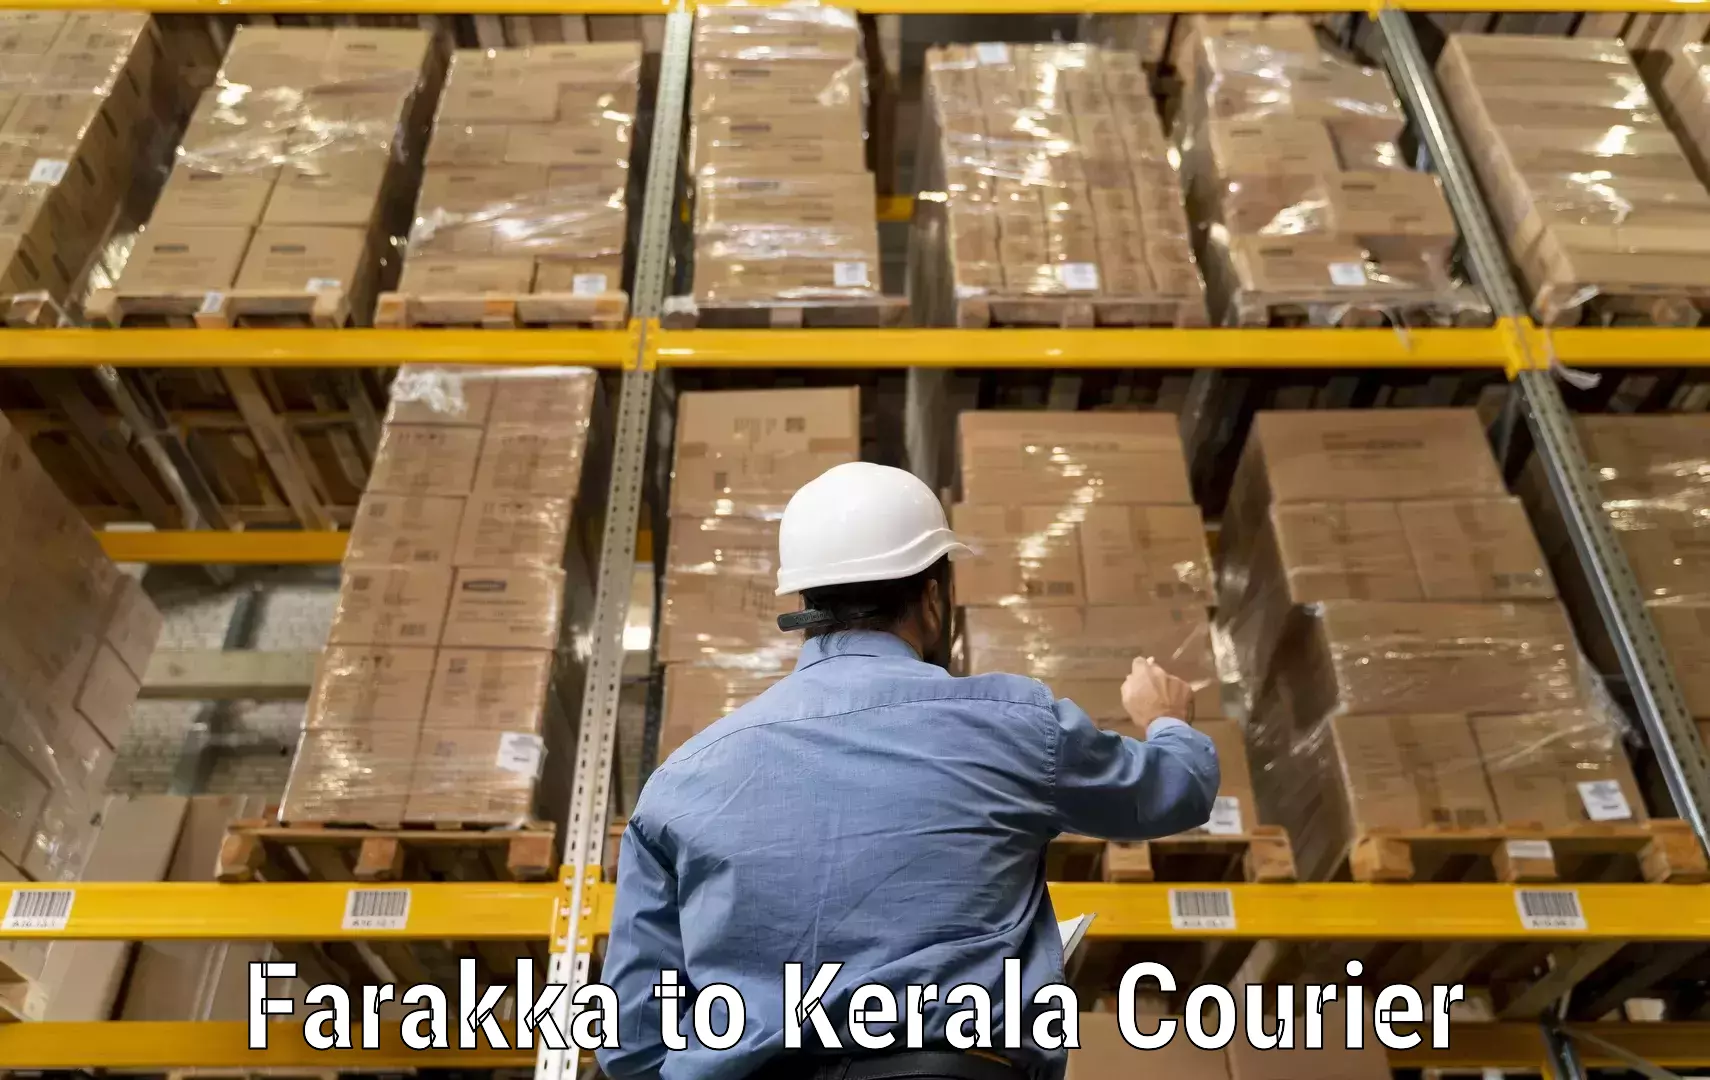 Courier dispatch services Farakka to Kerala